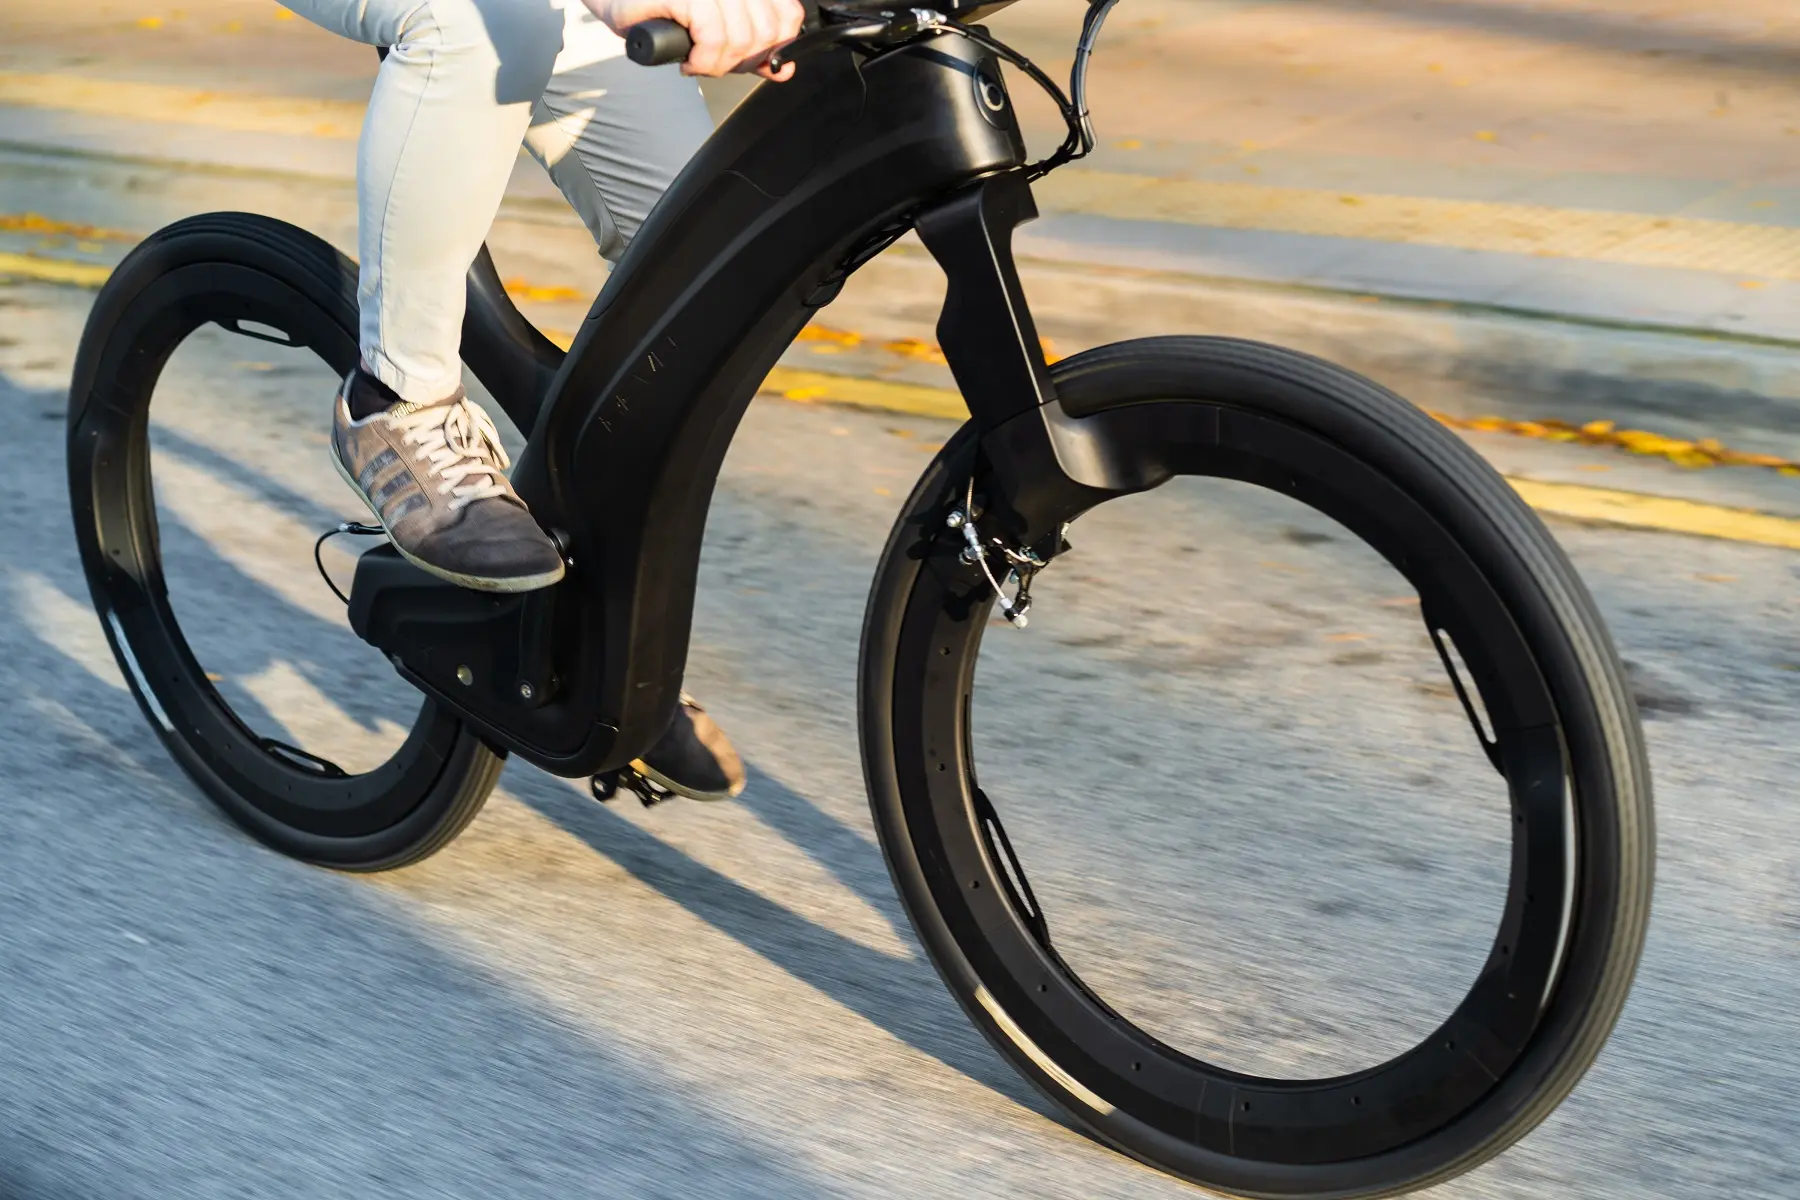 stopverf Italiaans stel je voor 5 e-bikes waarmee je opvalt, waaronder een futuristisch, spaakloos model